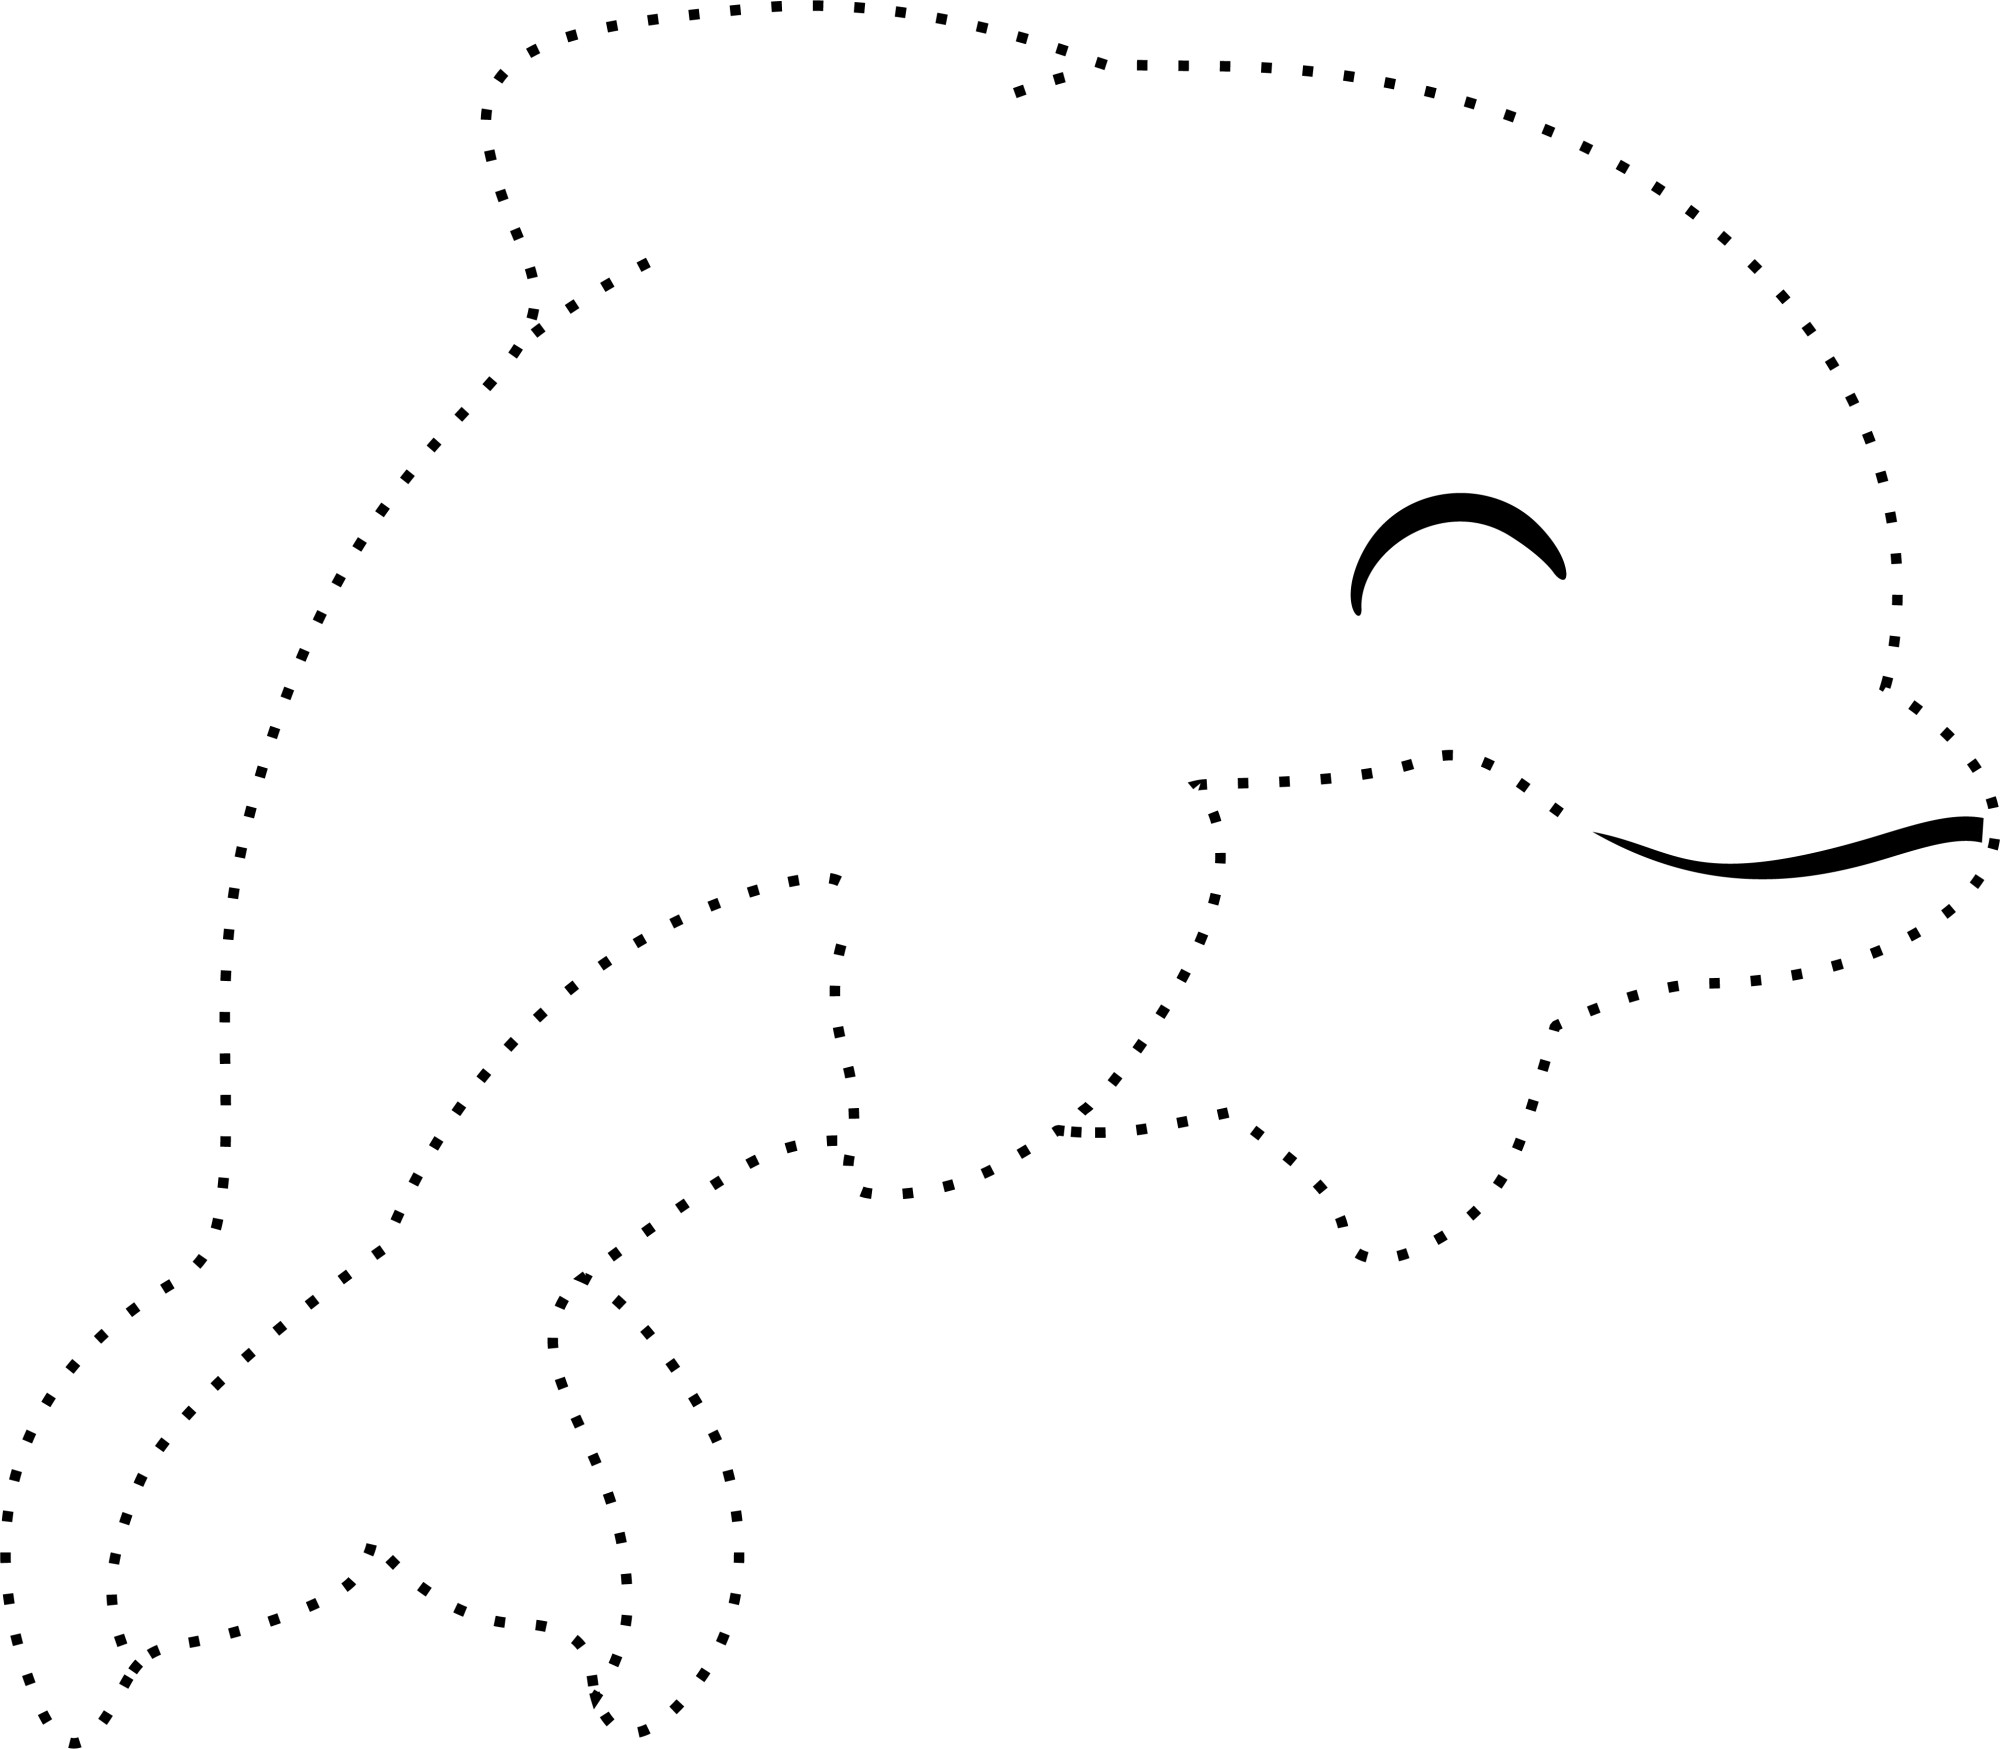 Раскраска для детей: дельфин по точкам